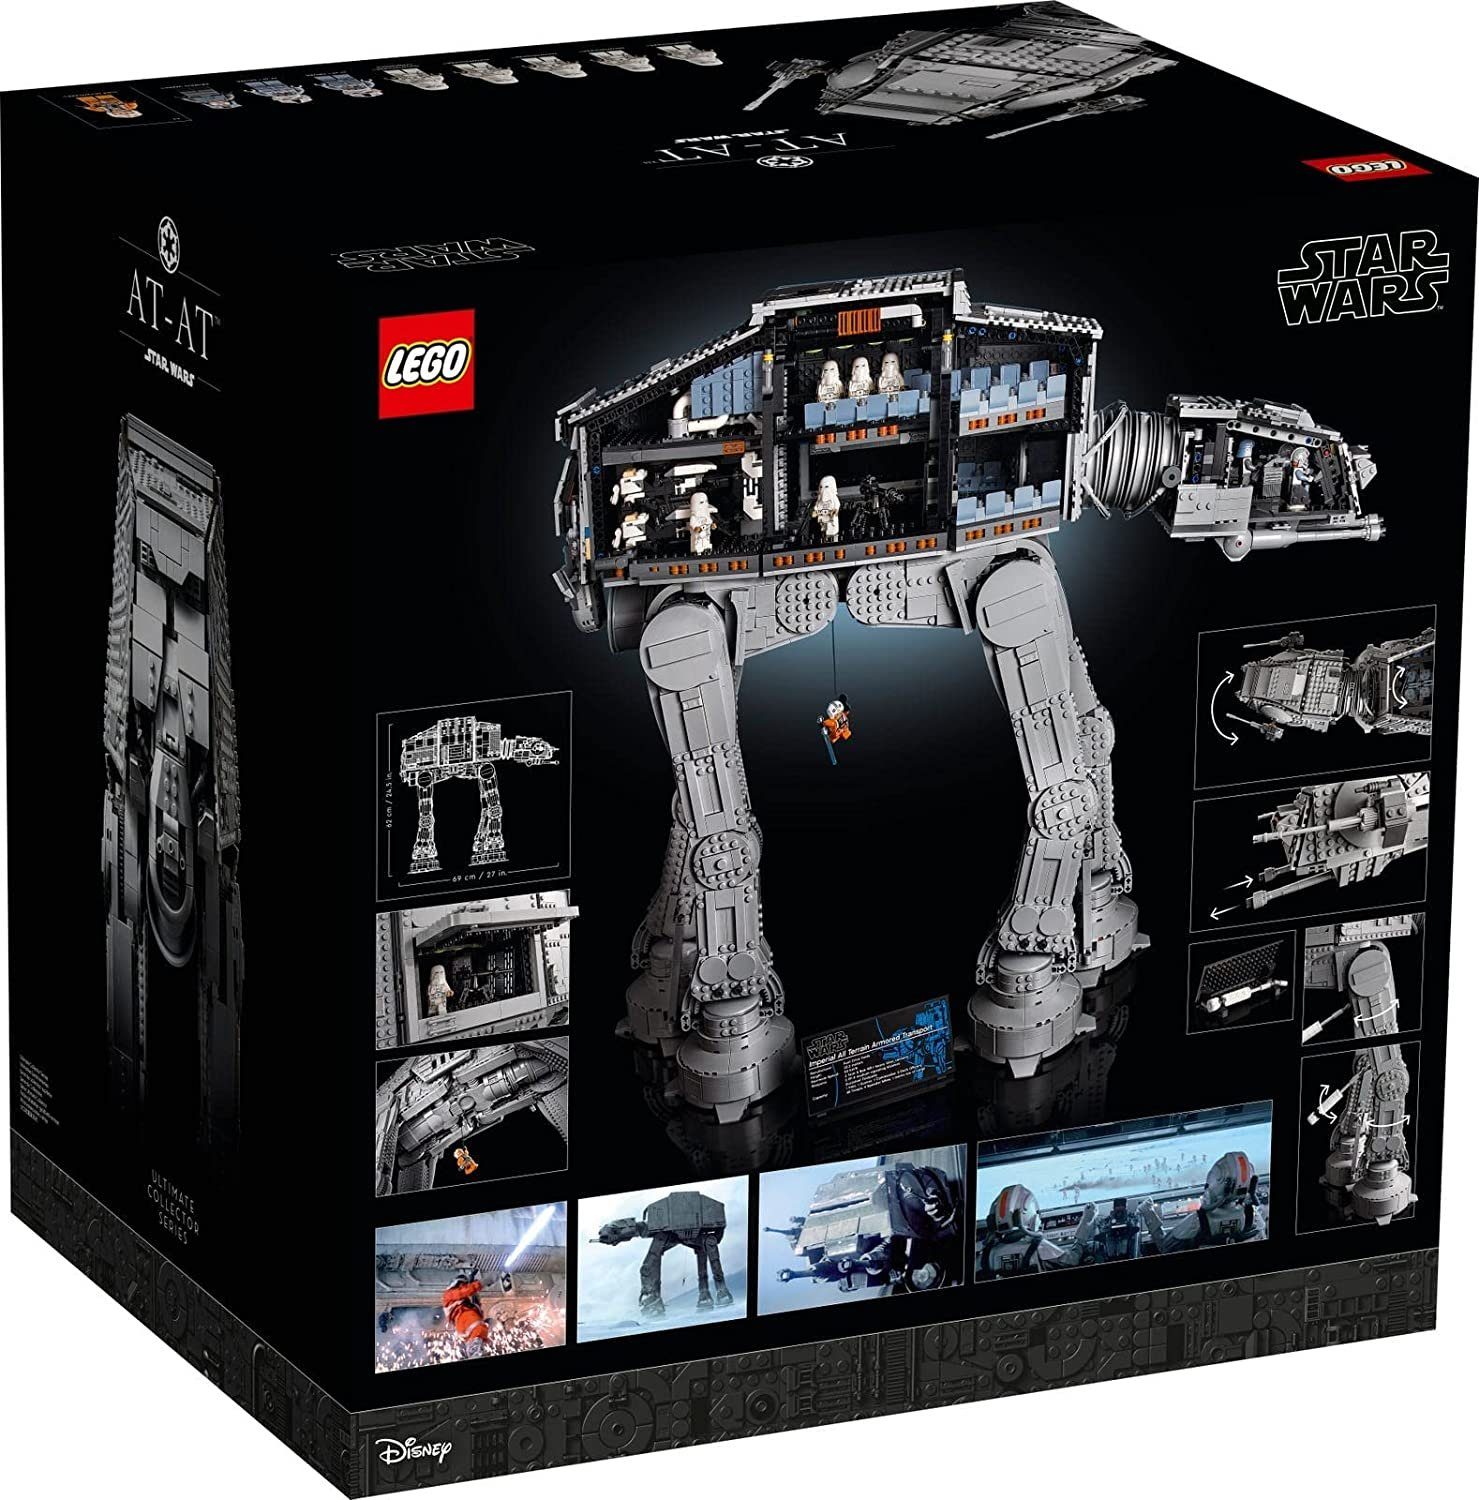 Series UCS, Wars LEGO® AT-AT St) Ultimate Collectors (6785 Walker Star 75313 Konstruktions-Spielset